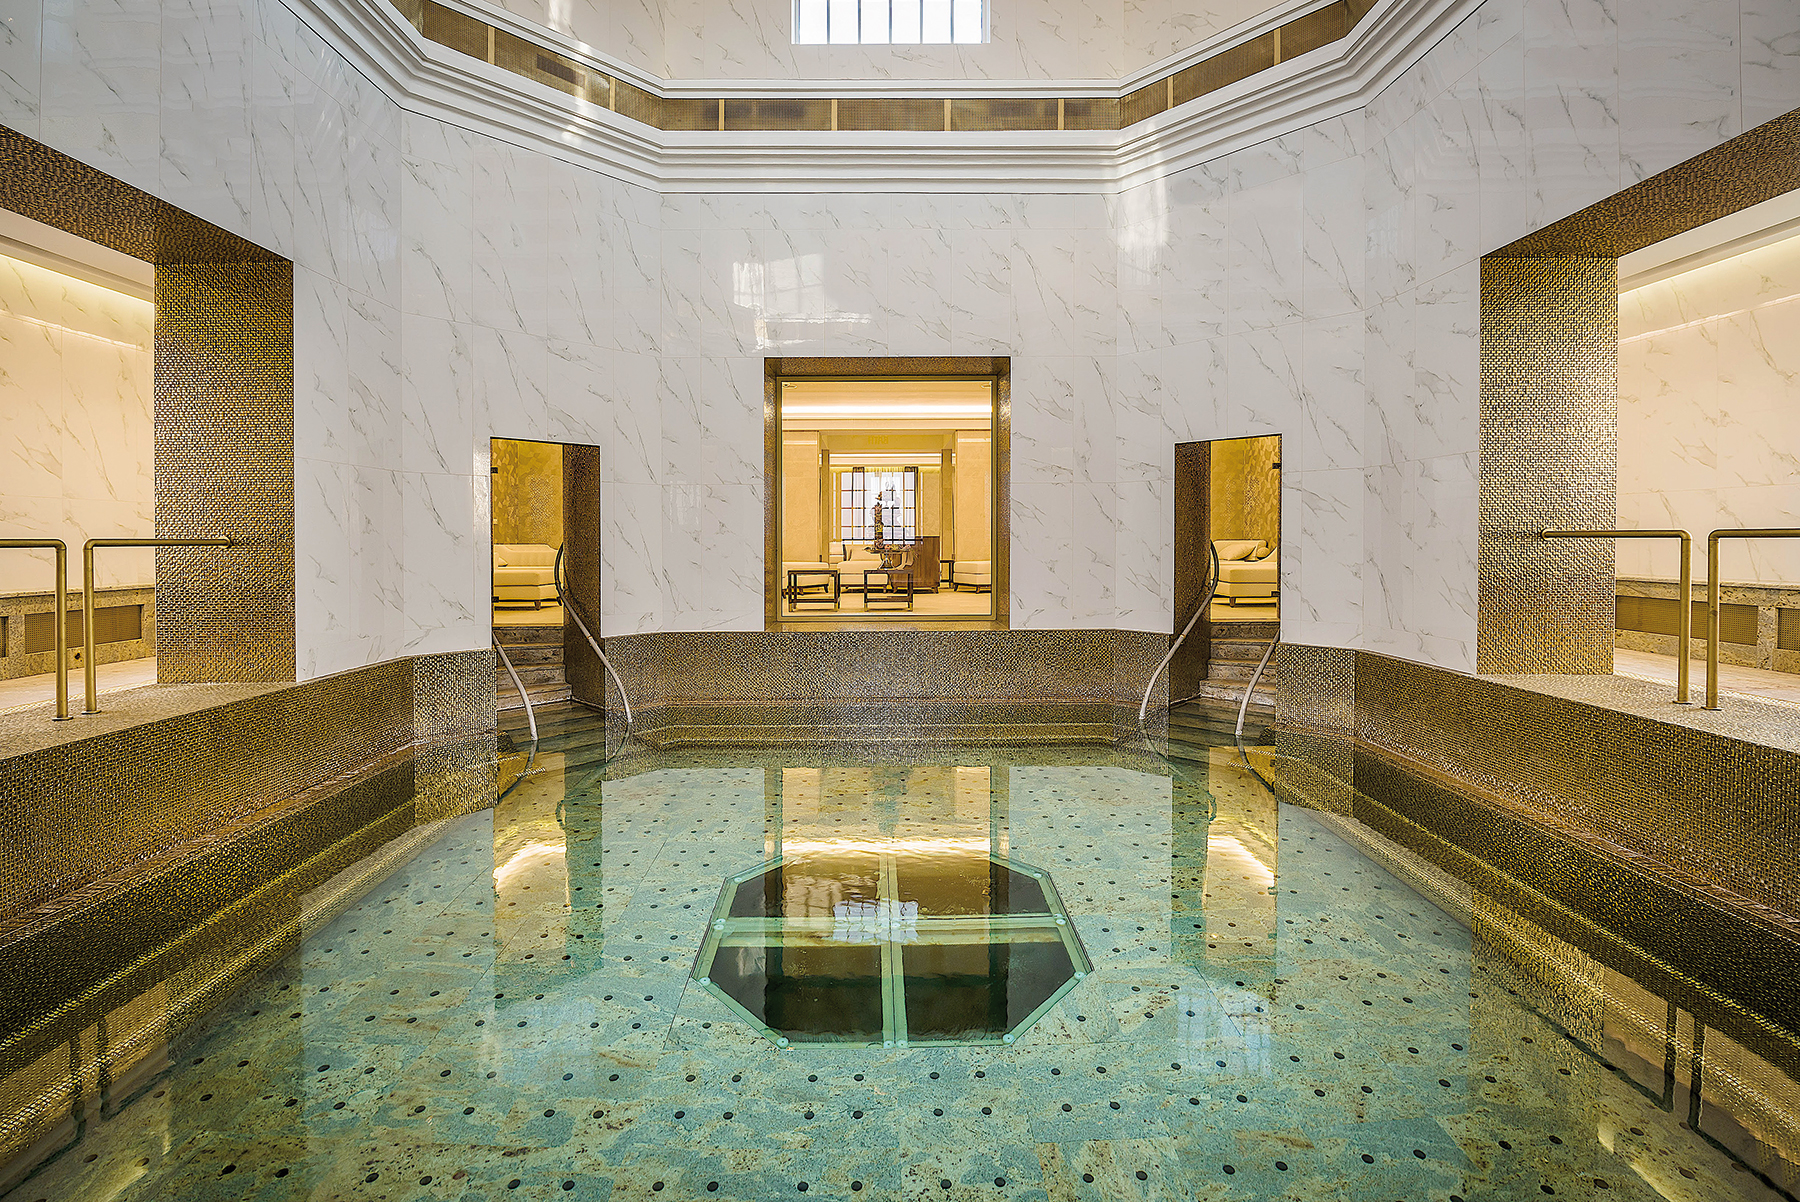 Royal Bath (bývalý Modrý kúpeľ) - bazén polygonálneho tvaru so zlatou mozaikou má stále aktívnu piscinu s prirodzeným prietokom termálnej minerálnej liečivej vody.